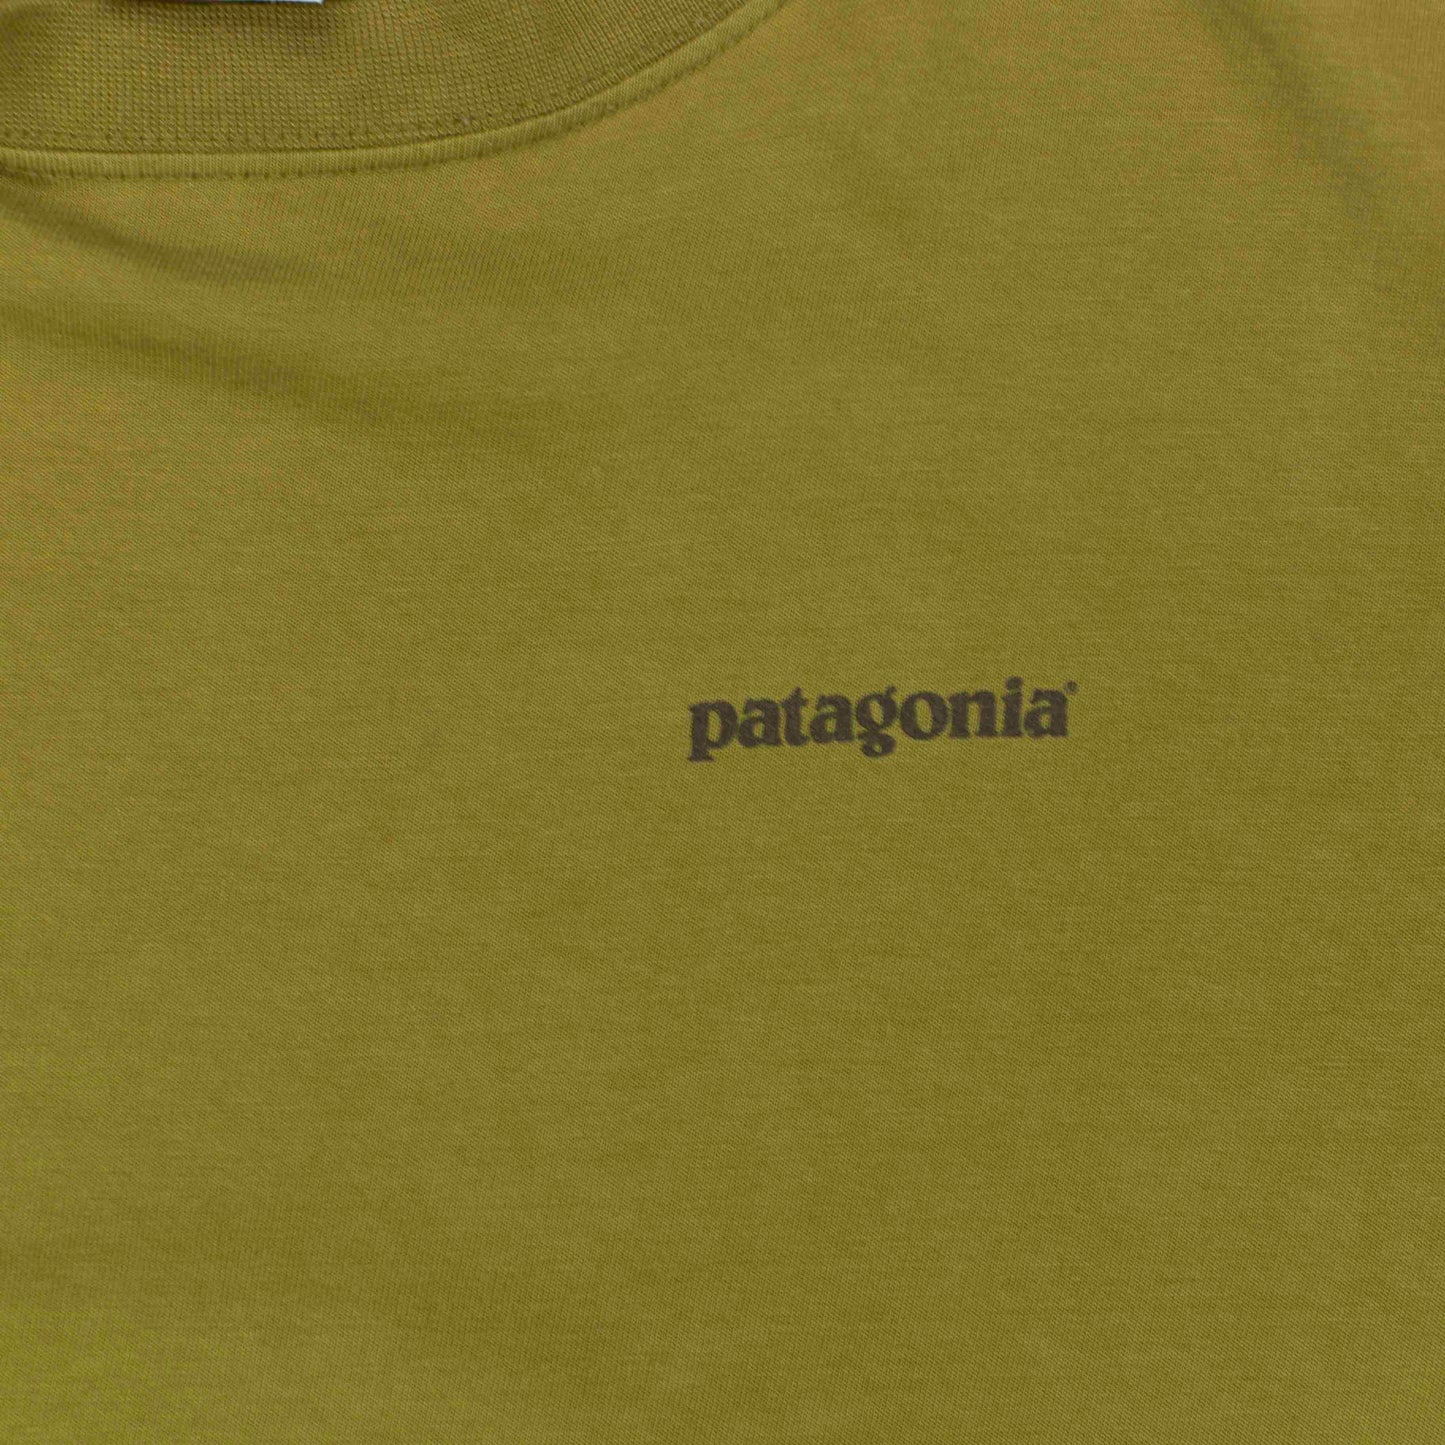 Patagonia - S/P